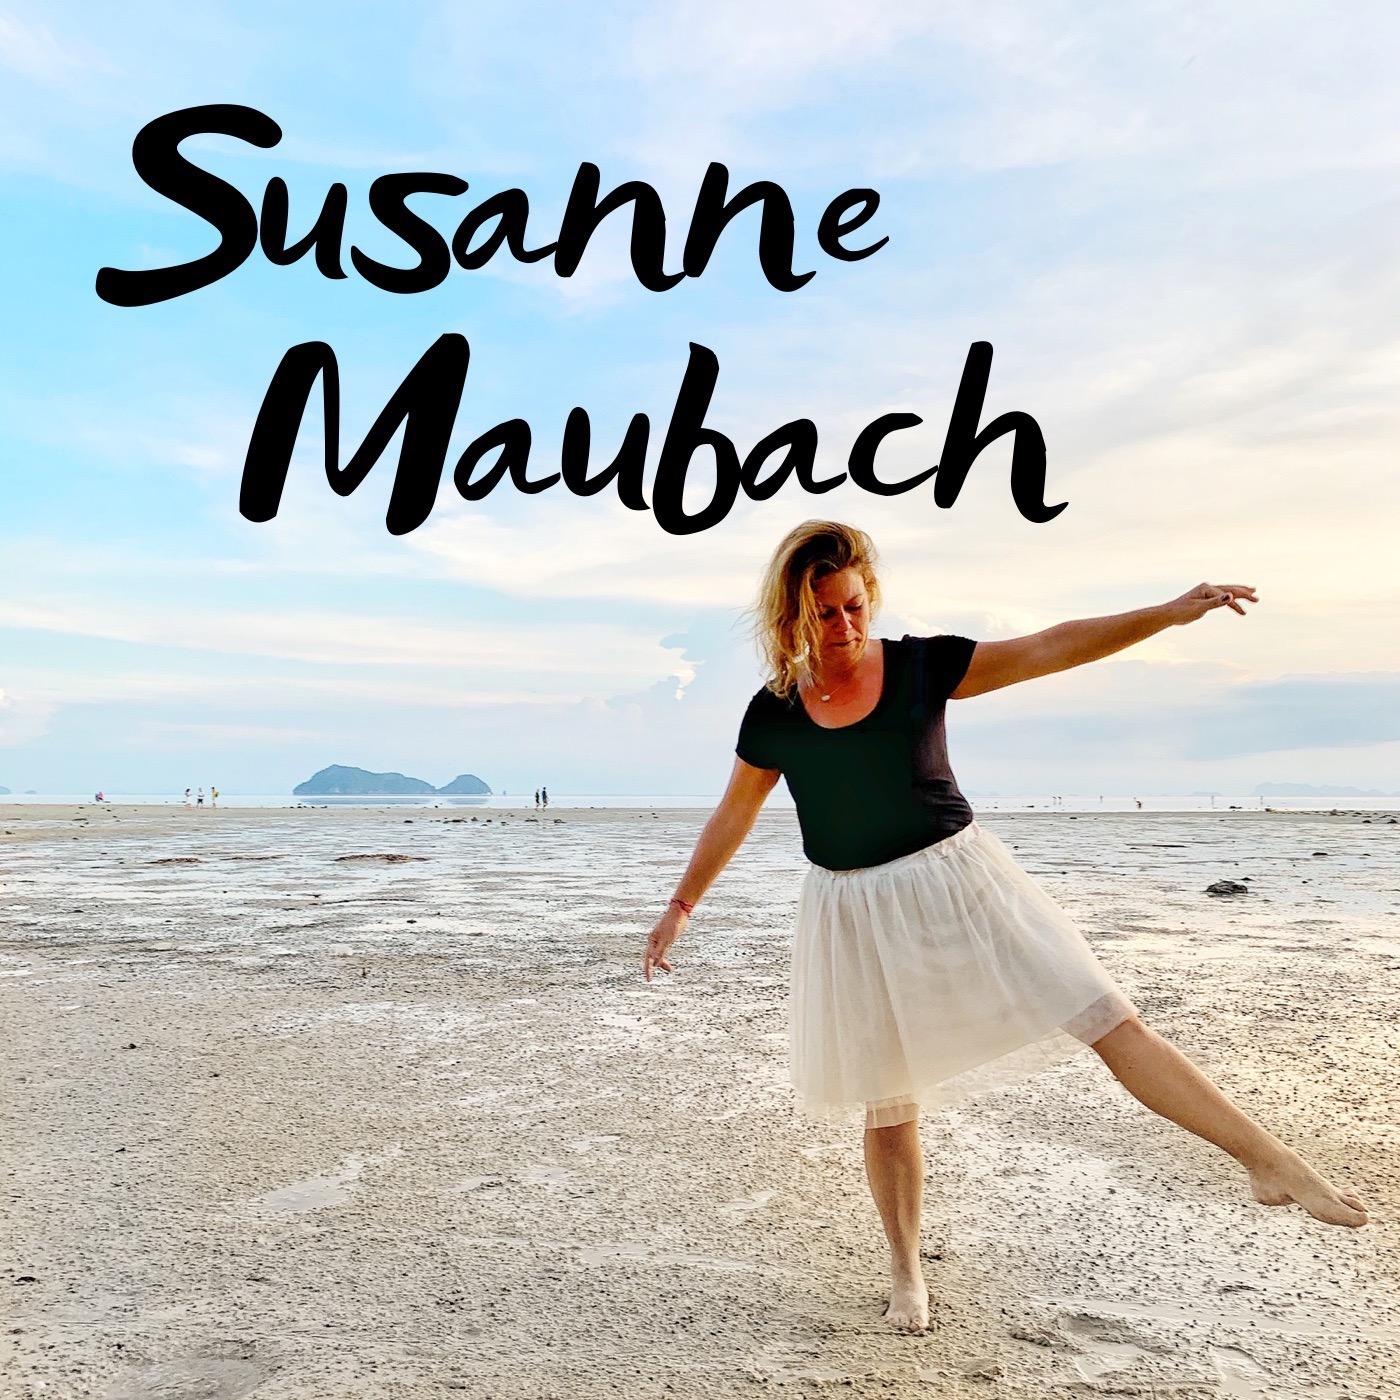 Susanne Maubach